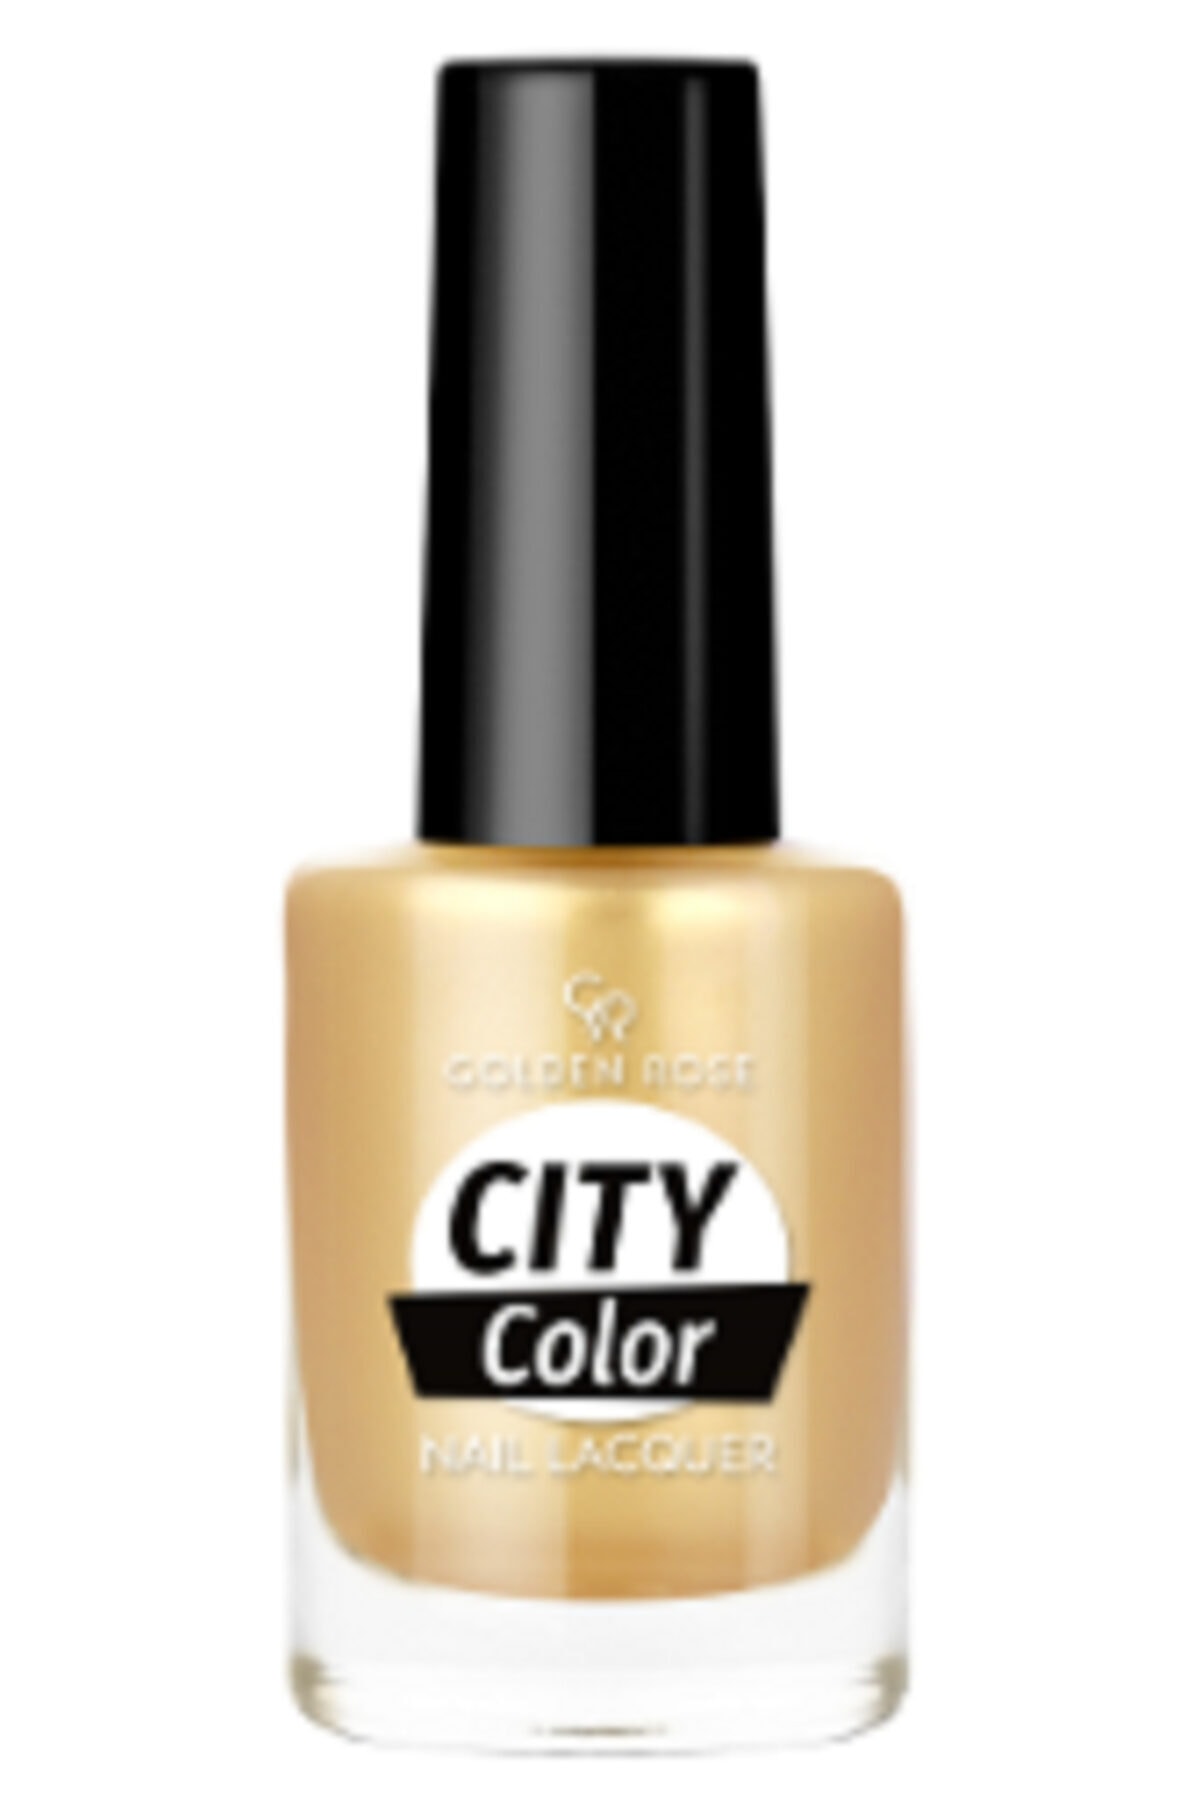 لاک ناخن سیتی کالر City color رنگ بنفش صورتی شماره 24 گلدن رز Golden Rose